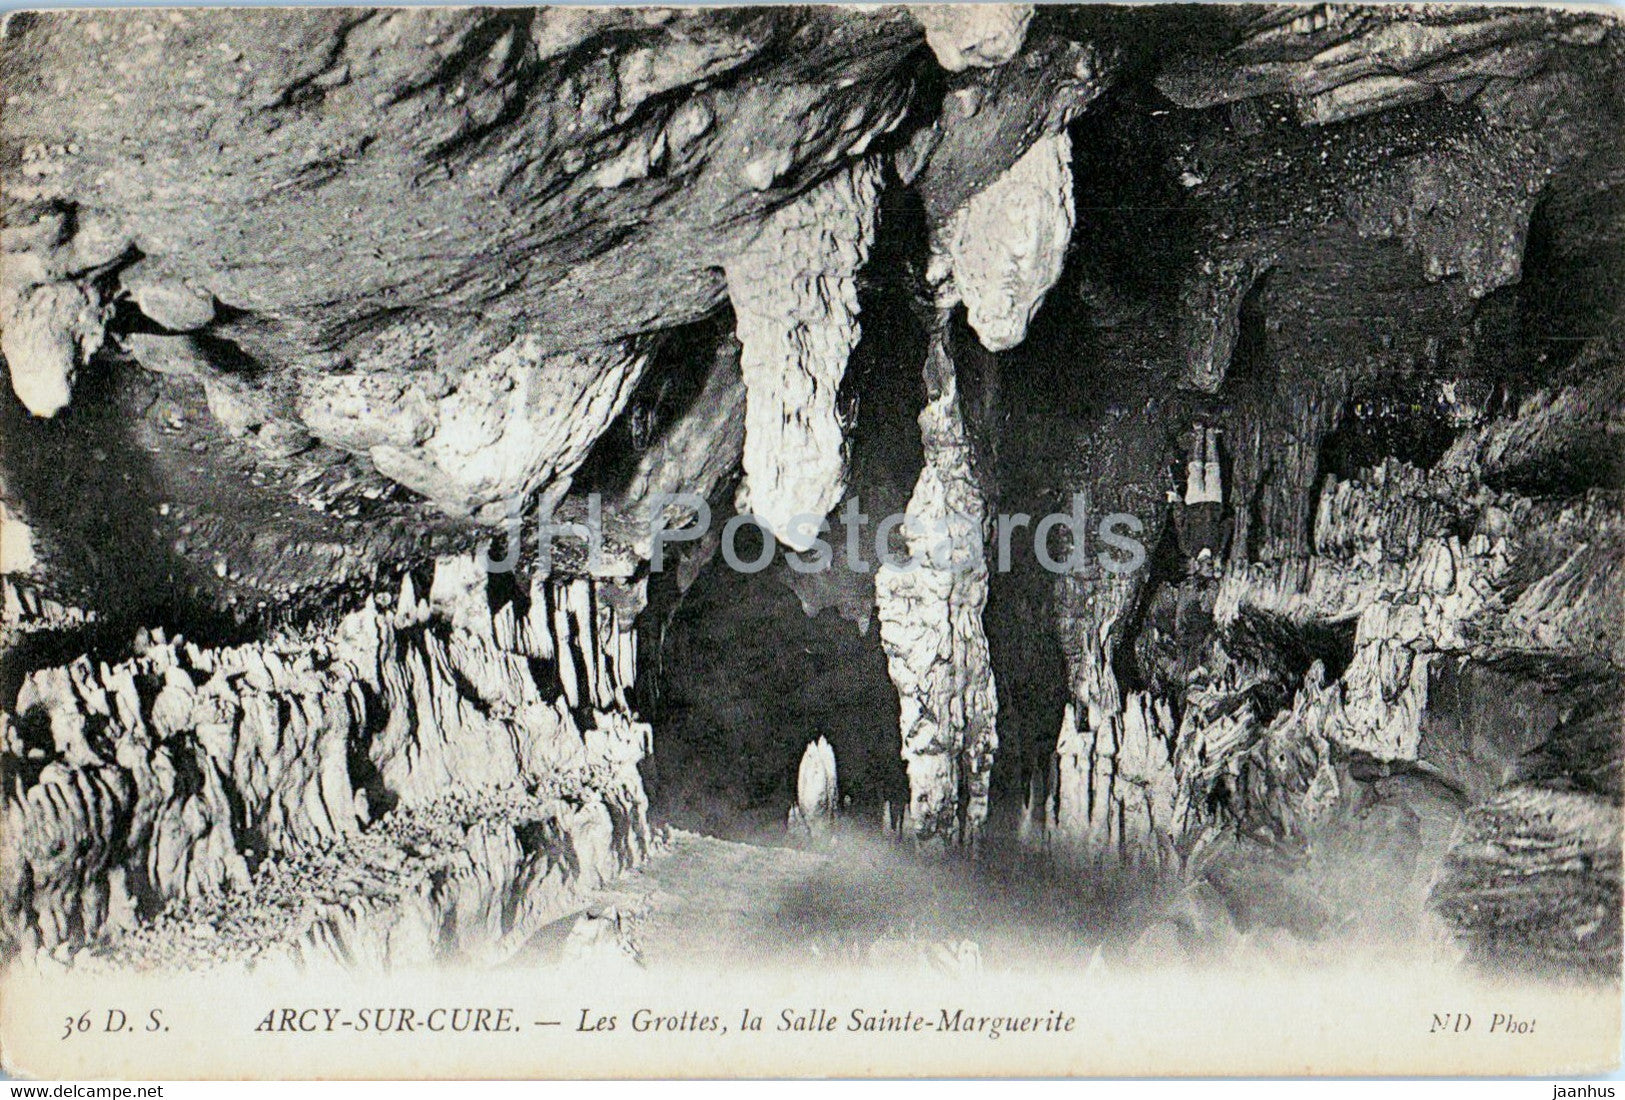 Arcy sur Cure - Les Grottes la Salle Sainte Marguerite - cave - 36 - old postcard - France - unused - JH Postcards